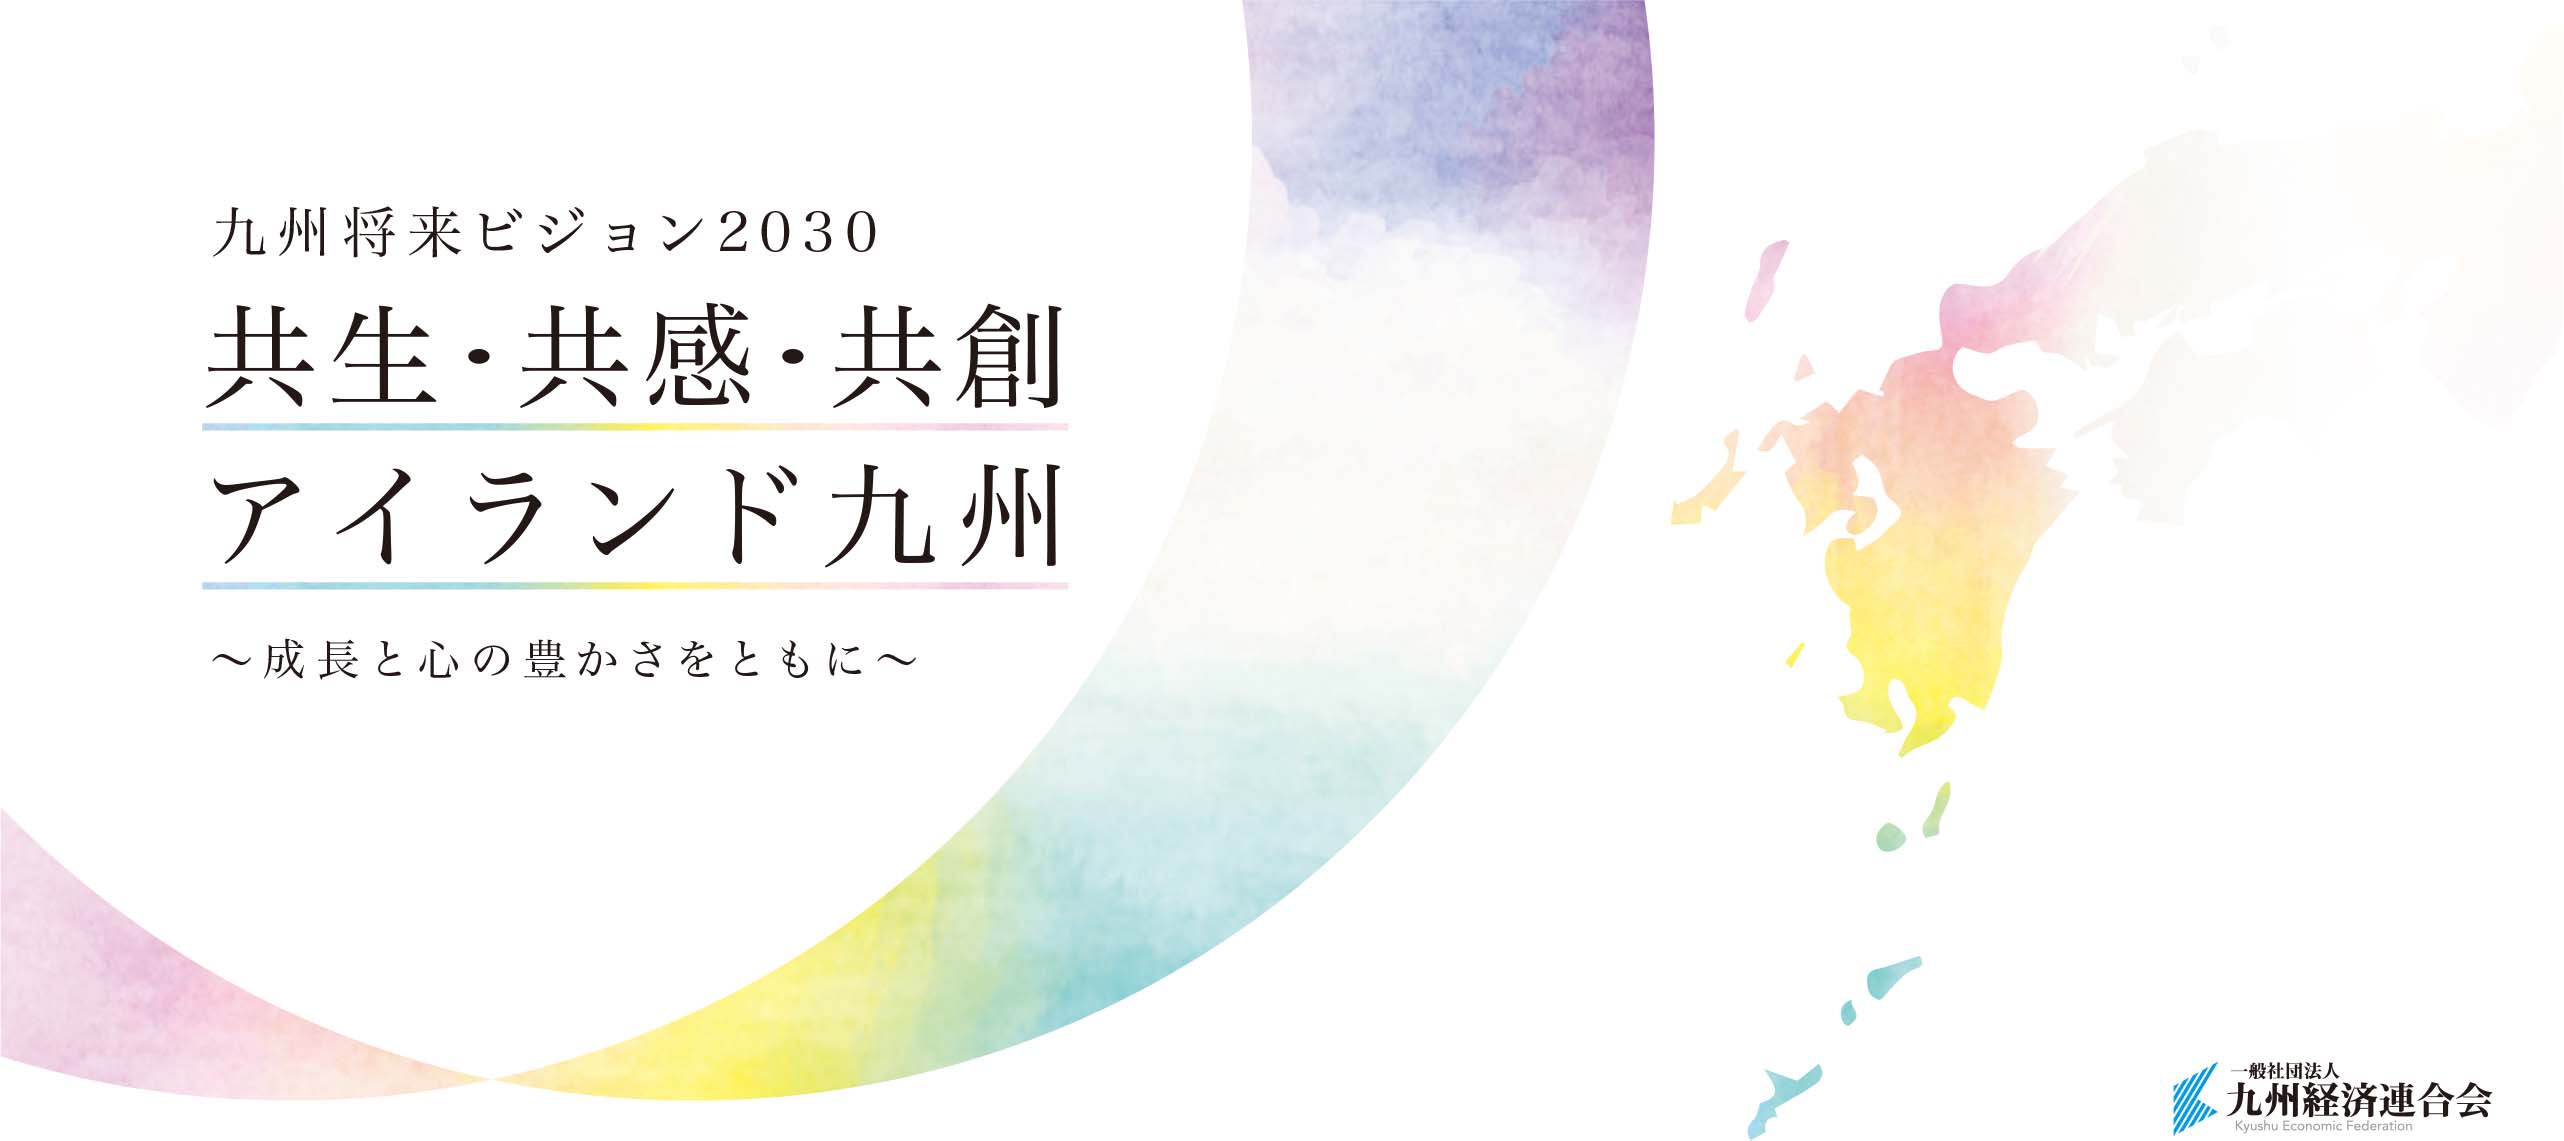 九州将来ビジョン2030‐共生・共感・共創アイランド九州～成長と心の豊かさをともに～